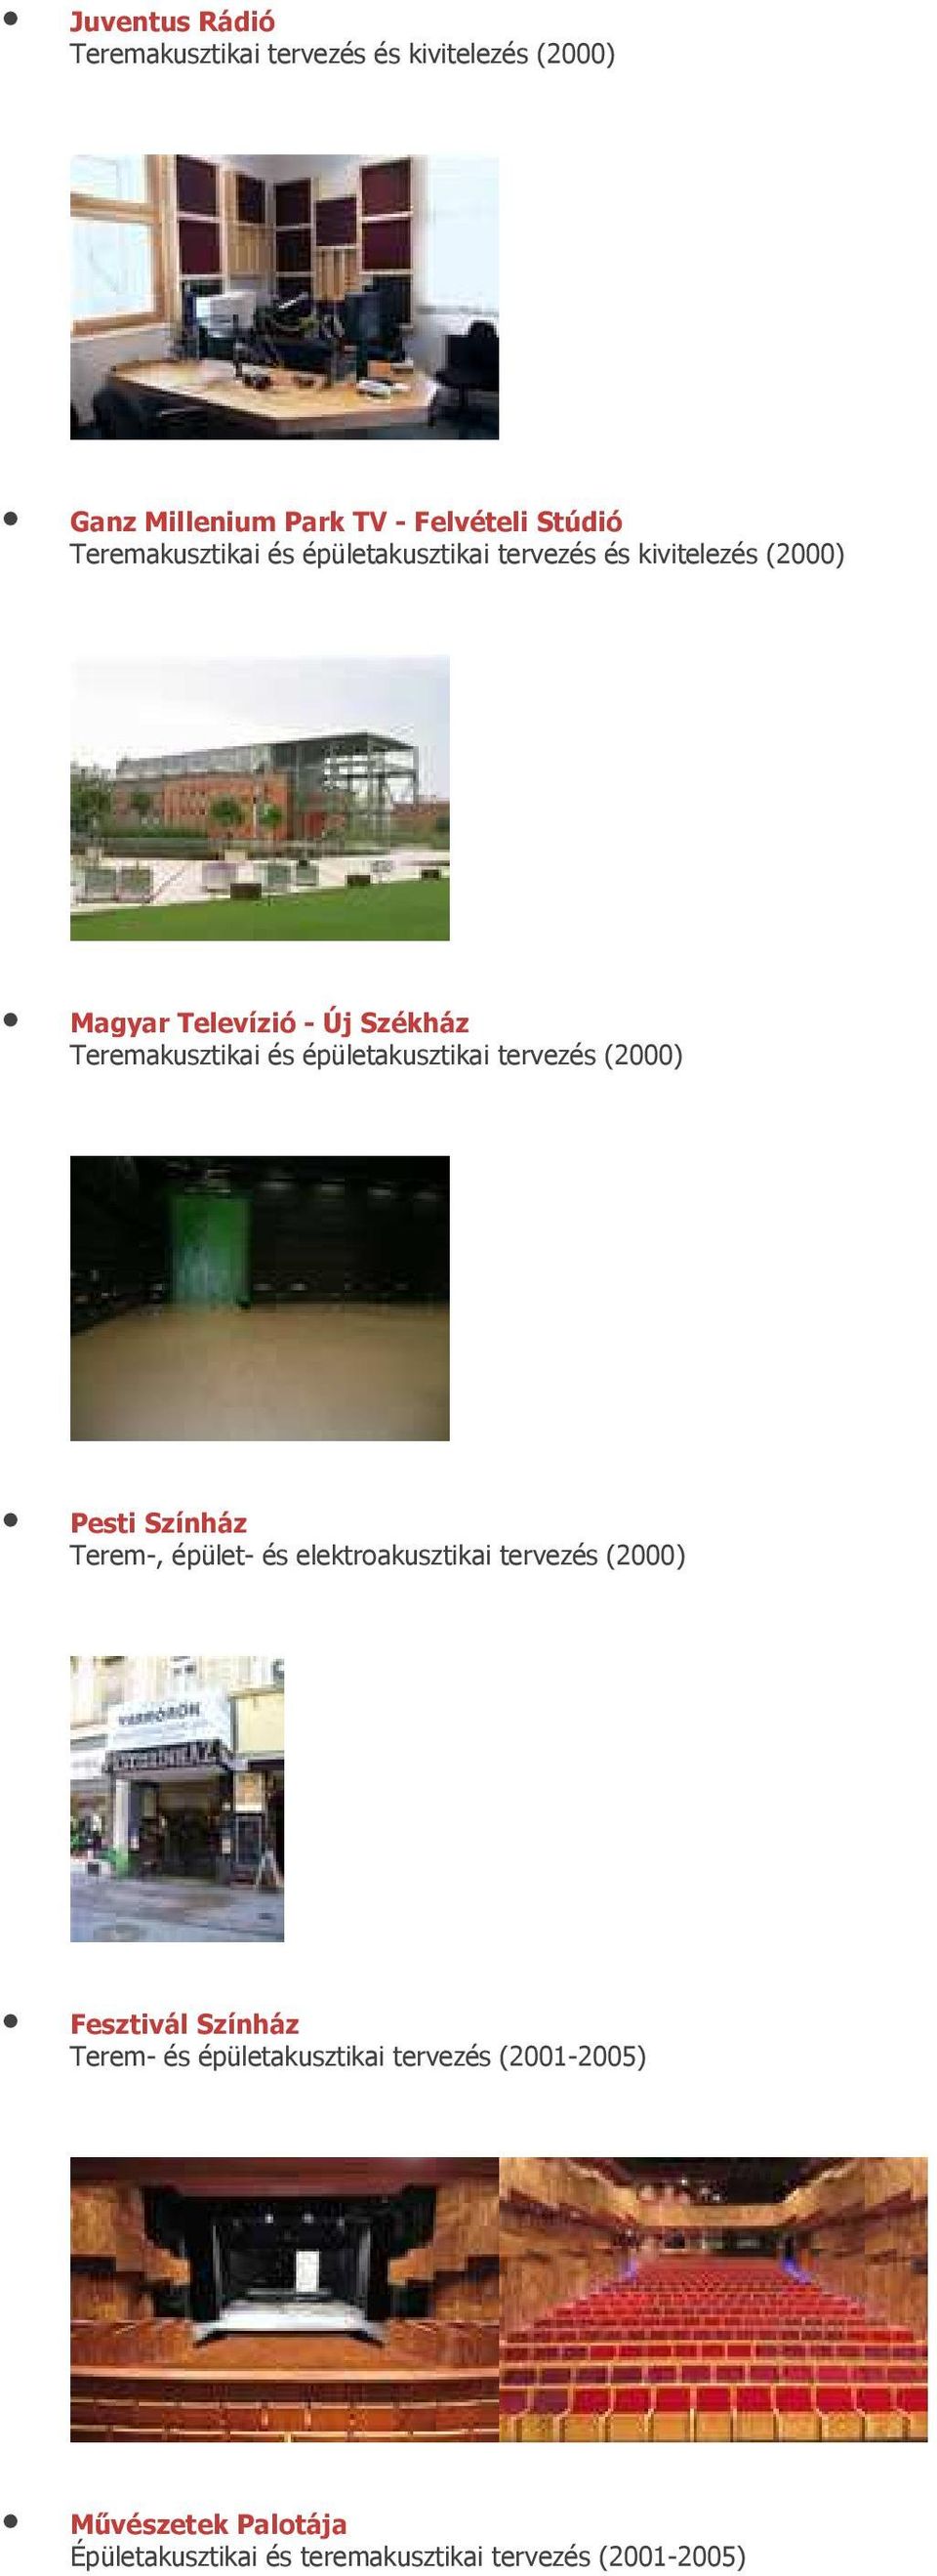 épületakusztikai tervezés (2000) Pesti Színház Terem-, épület- és elektroakusztikai tervezés (2000) Fesztivál